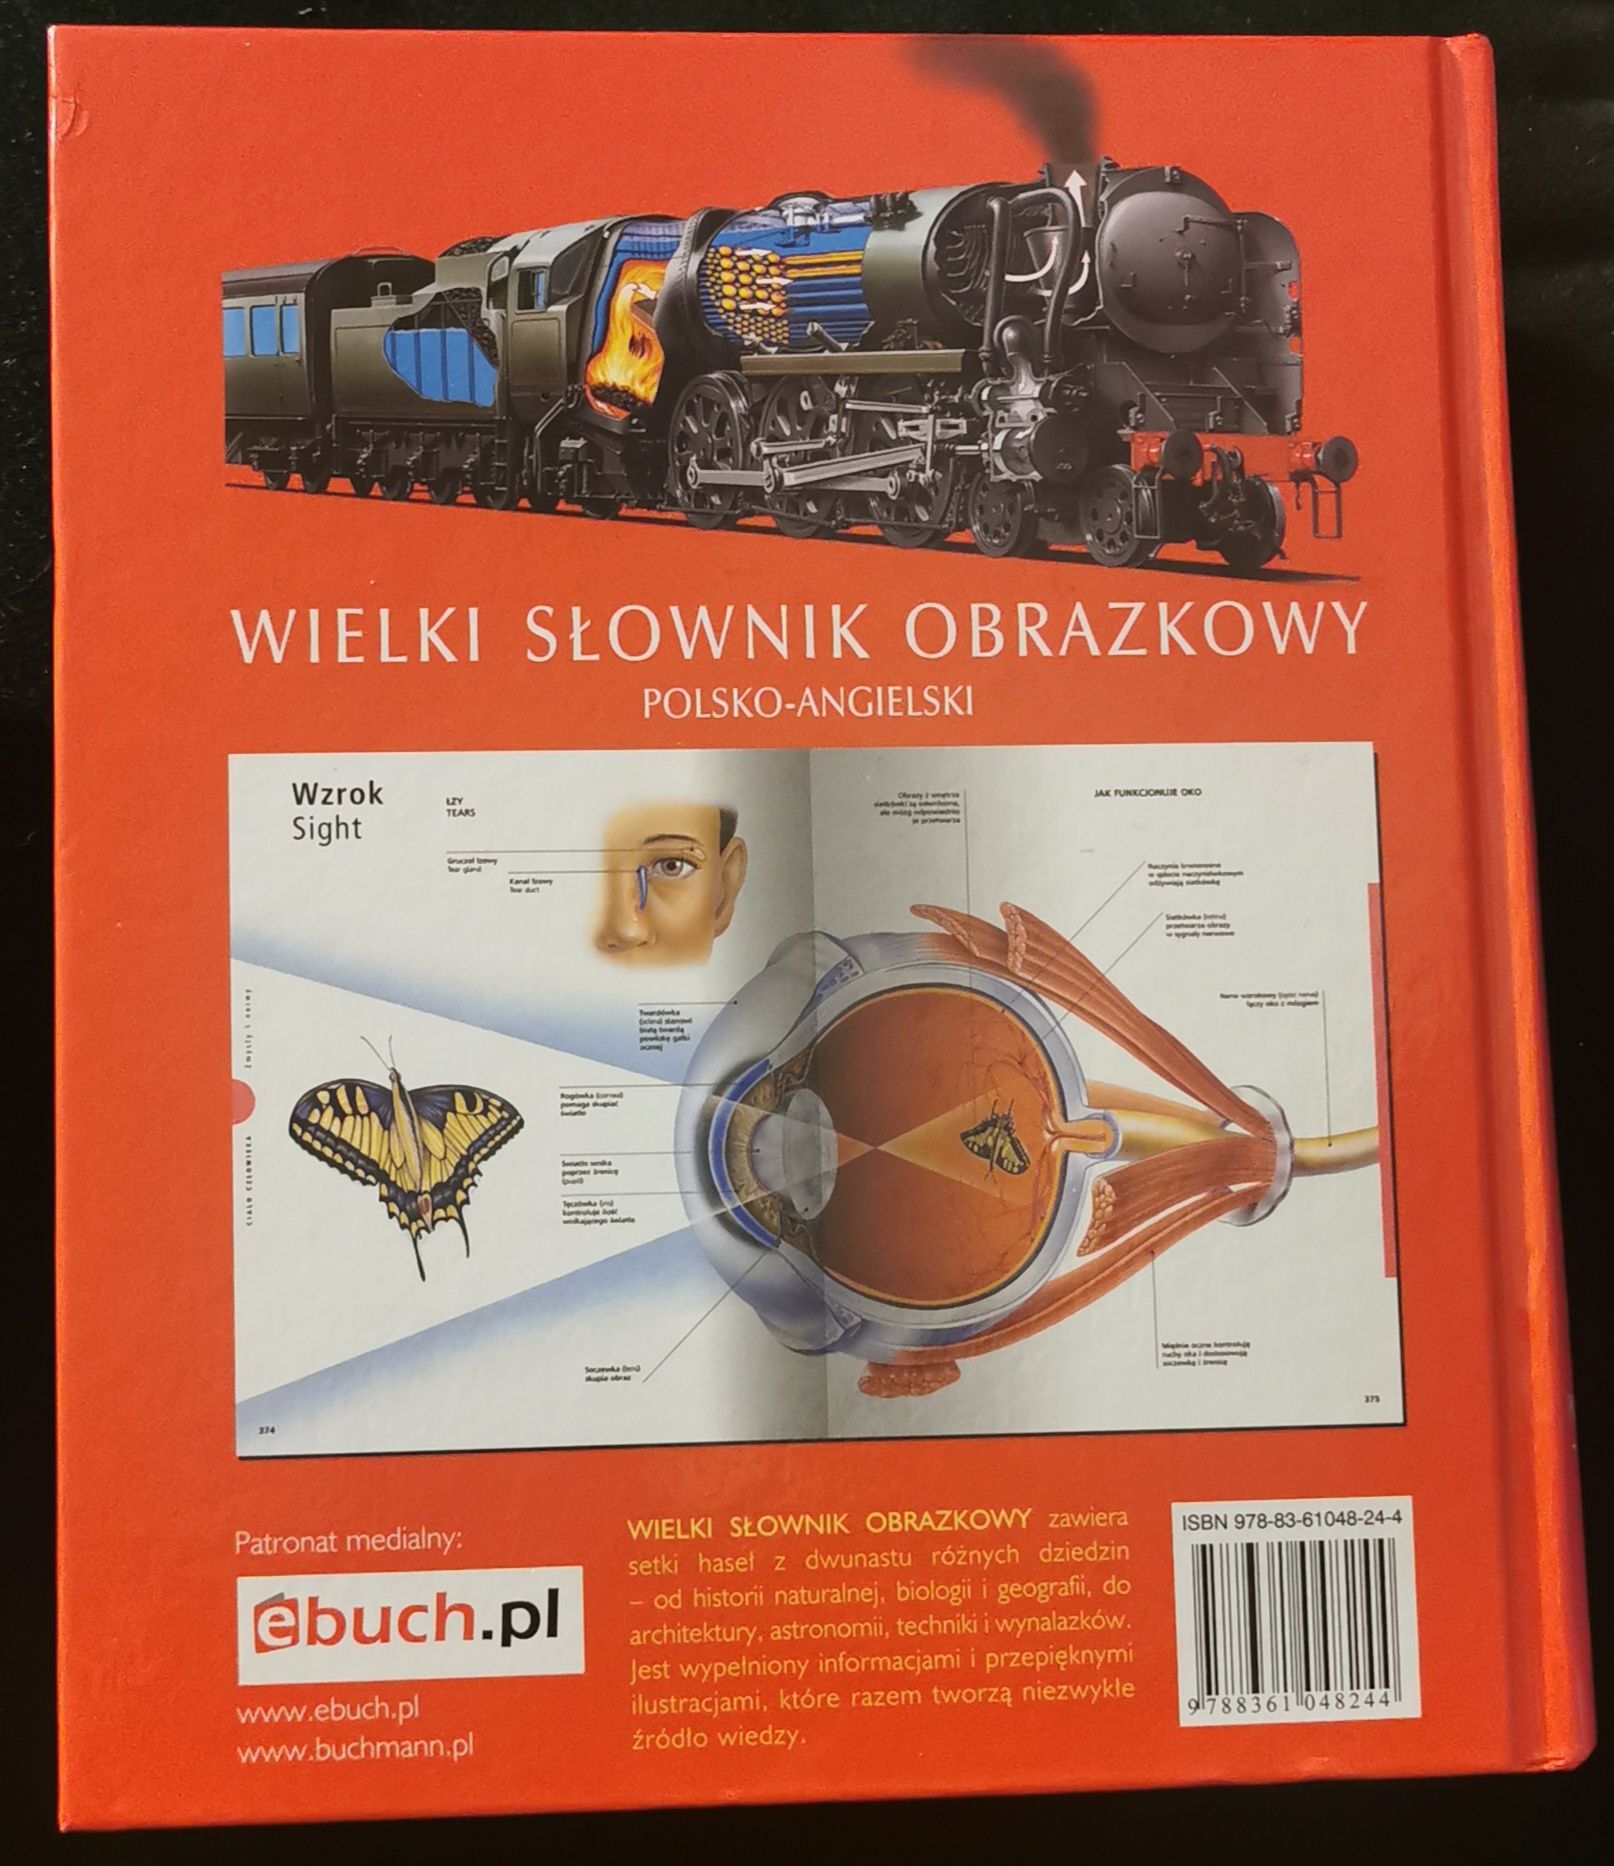 Słownik obrazkowy Polsko-angielski, prezent, dla dzieci, święta